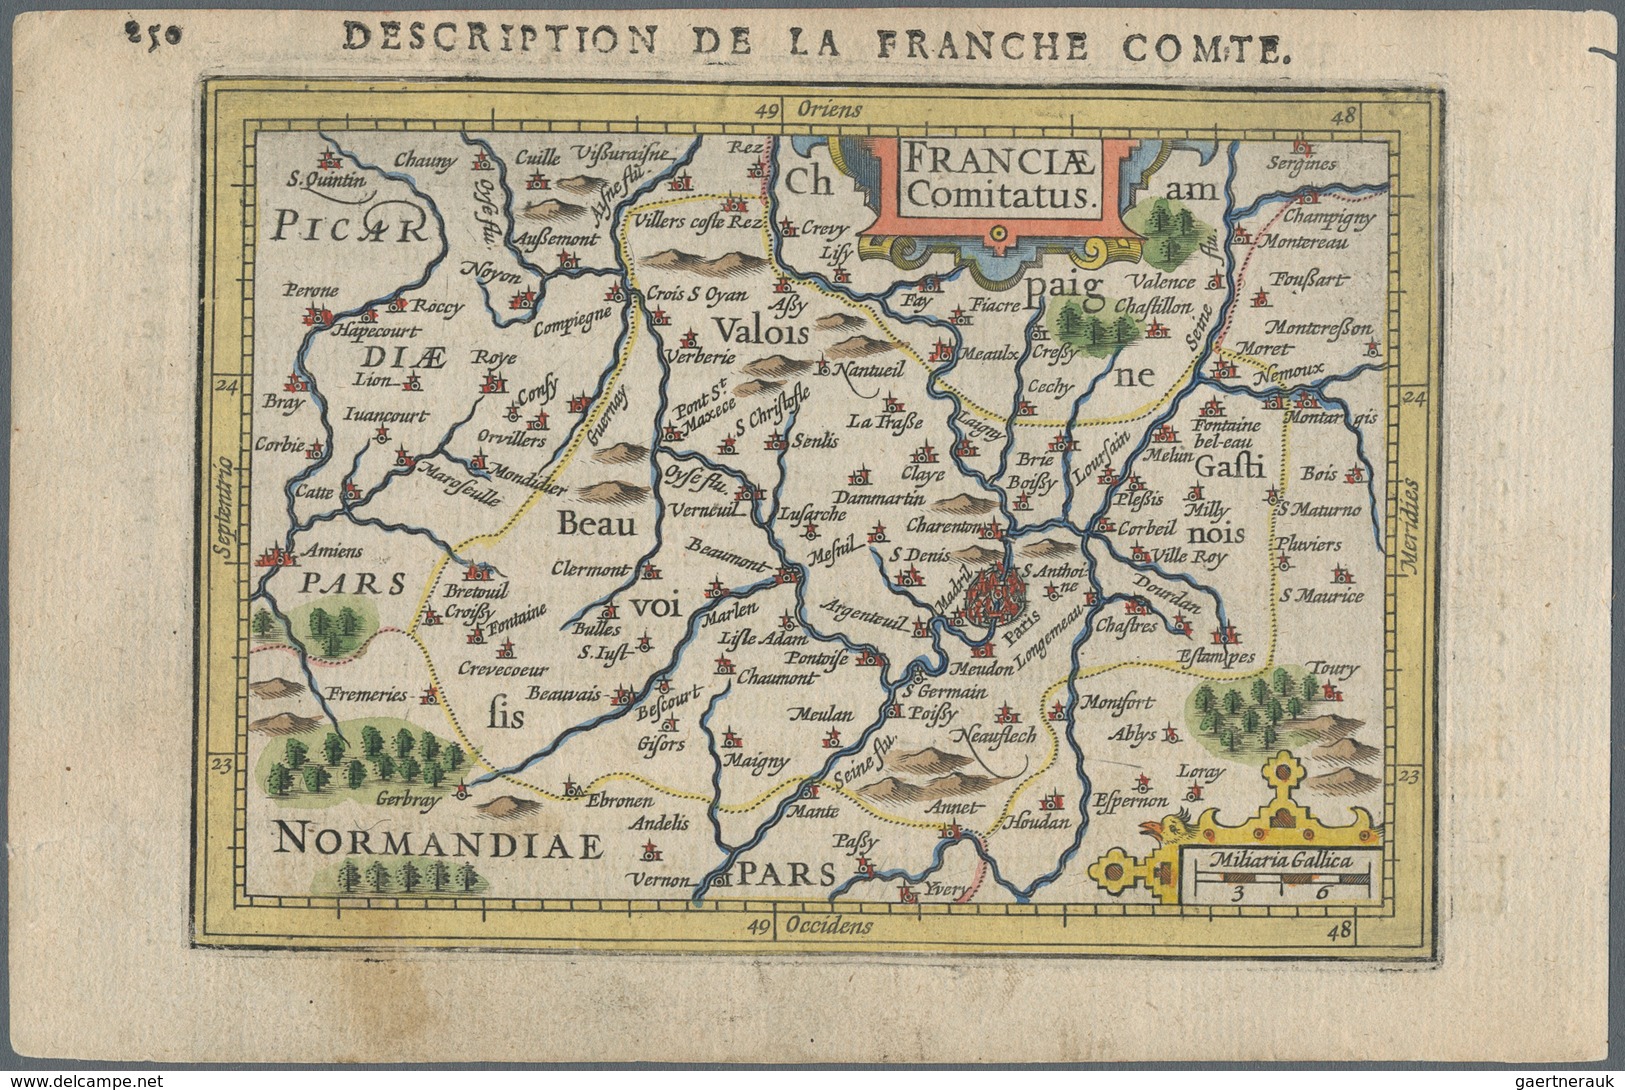 Landkarten Und Stiche: 1610. France Comitatus, Description De La Franche Comte. Attractive Small For - Geographie